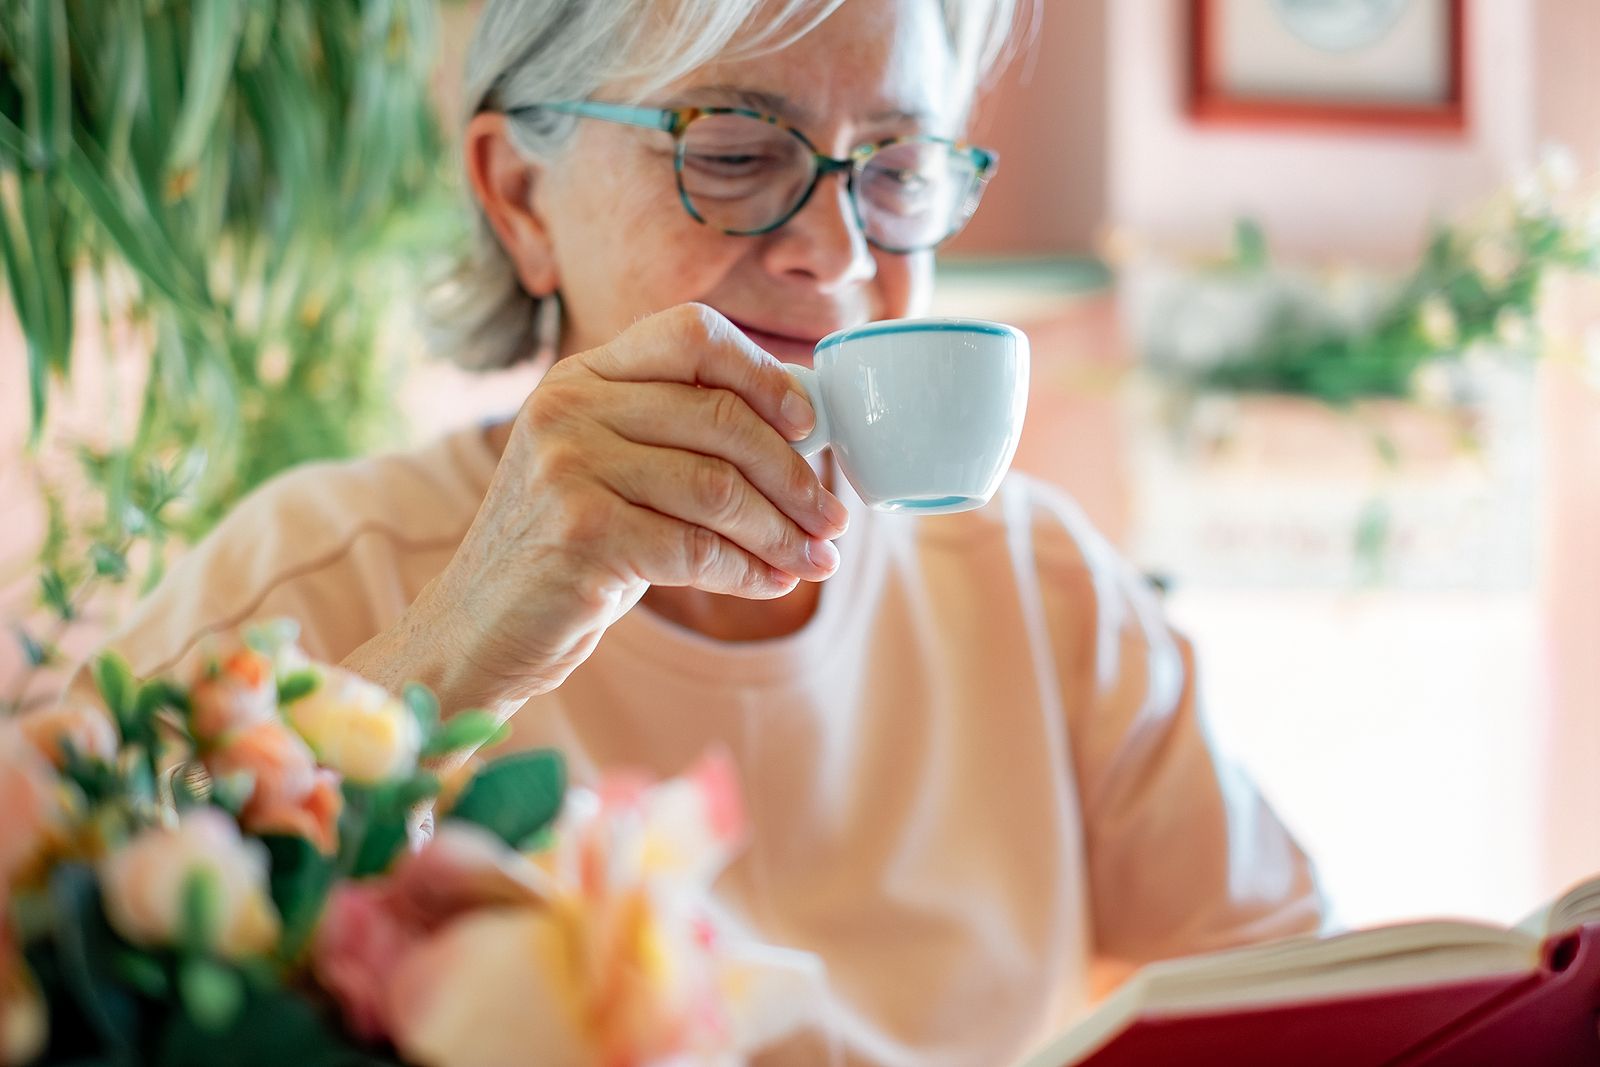 Tomar café espresso contribuye a prevenir el alzhéimer